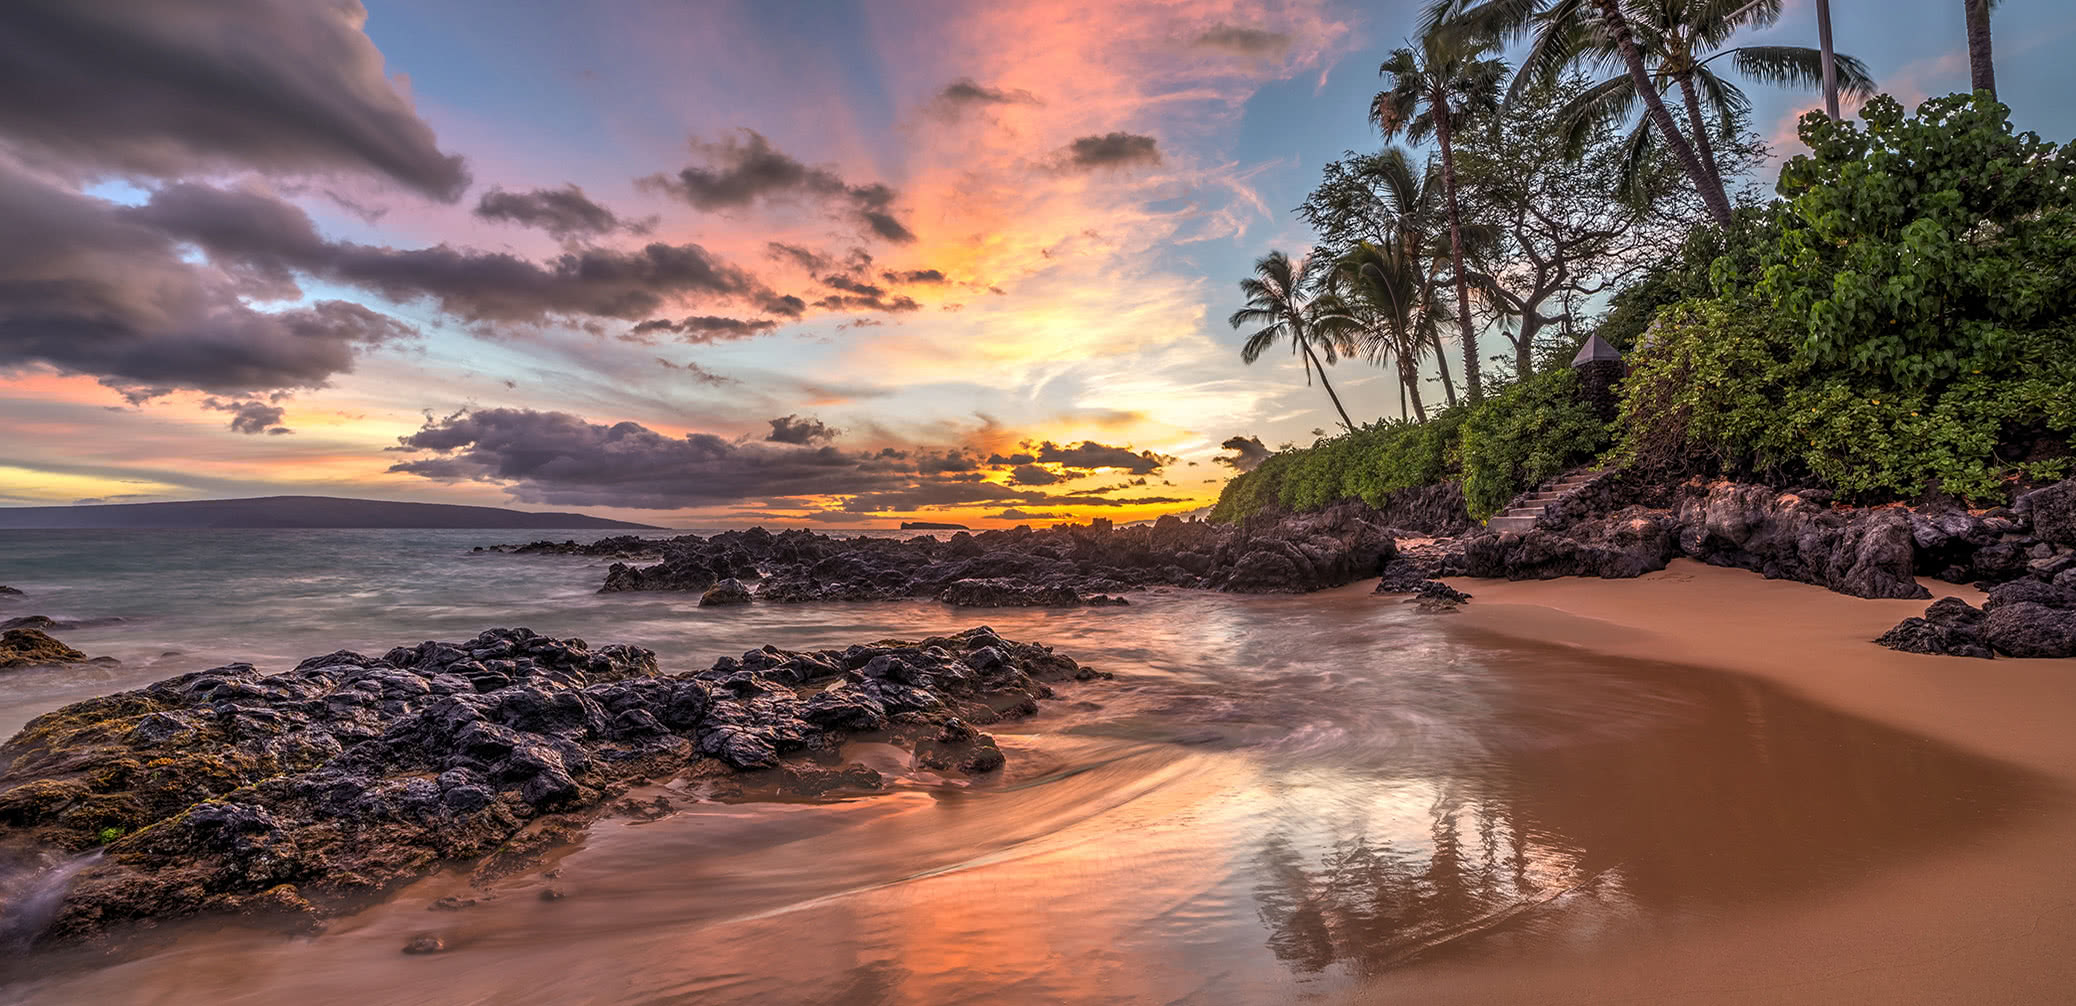 Wailea Marriott Beach Resort Vs. Andaz Vs. Hyatt Regency Maui: Which Is Best?